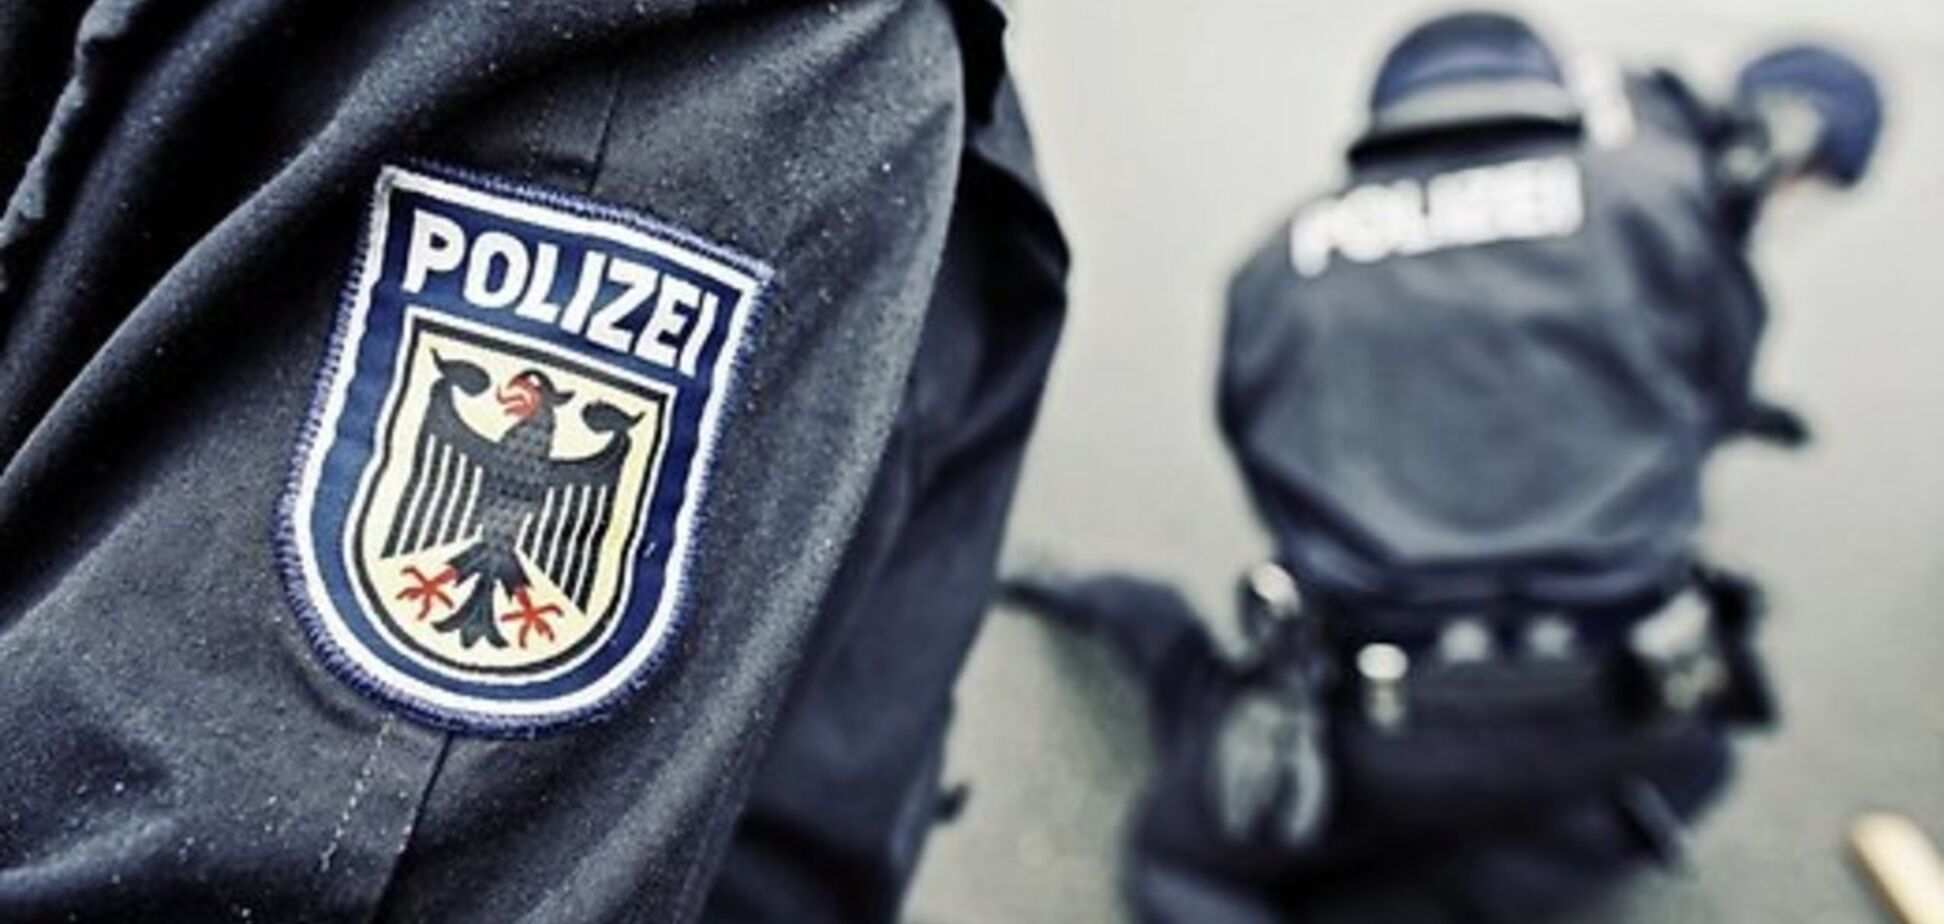 Германия: гражданская смелость под запретом полиции